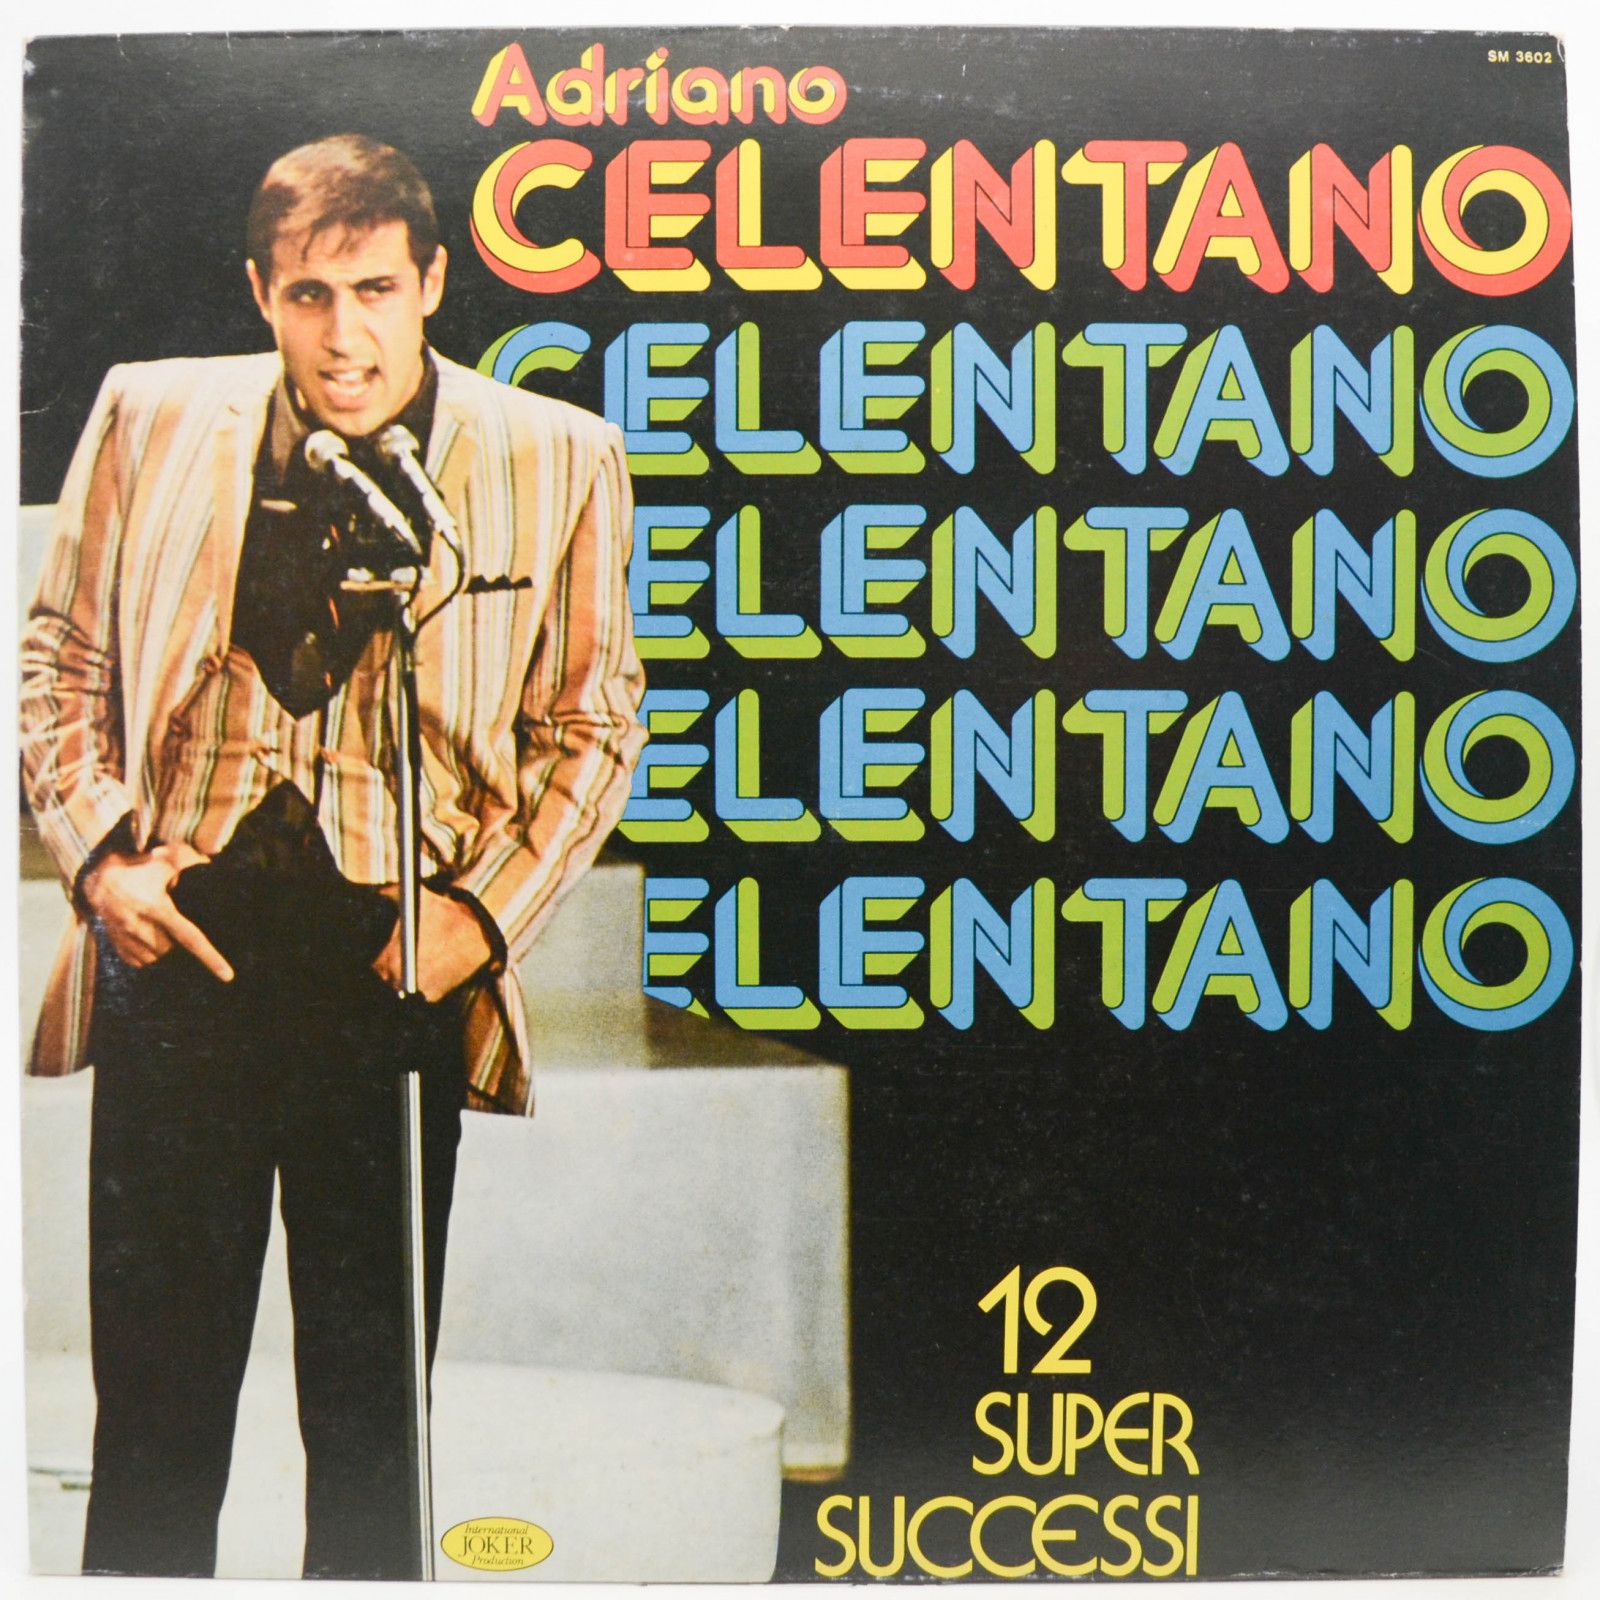 Adriano Celentano — 12 Super Successi (Italy), 1973